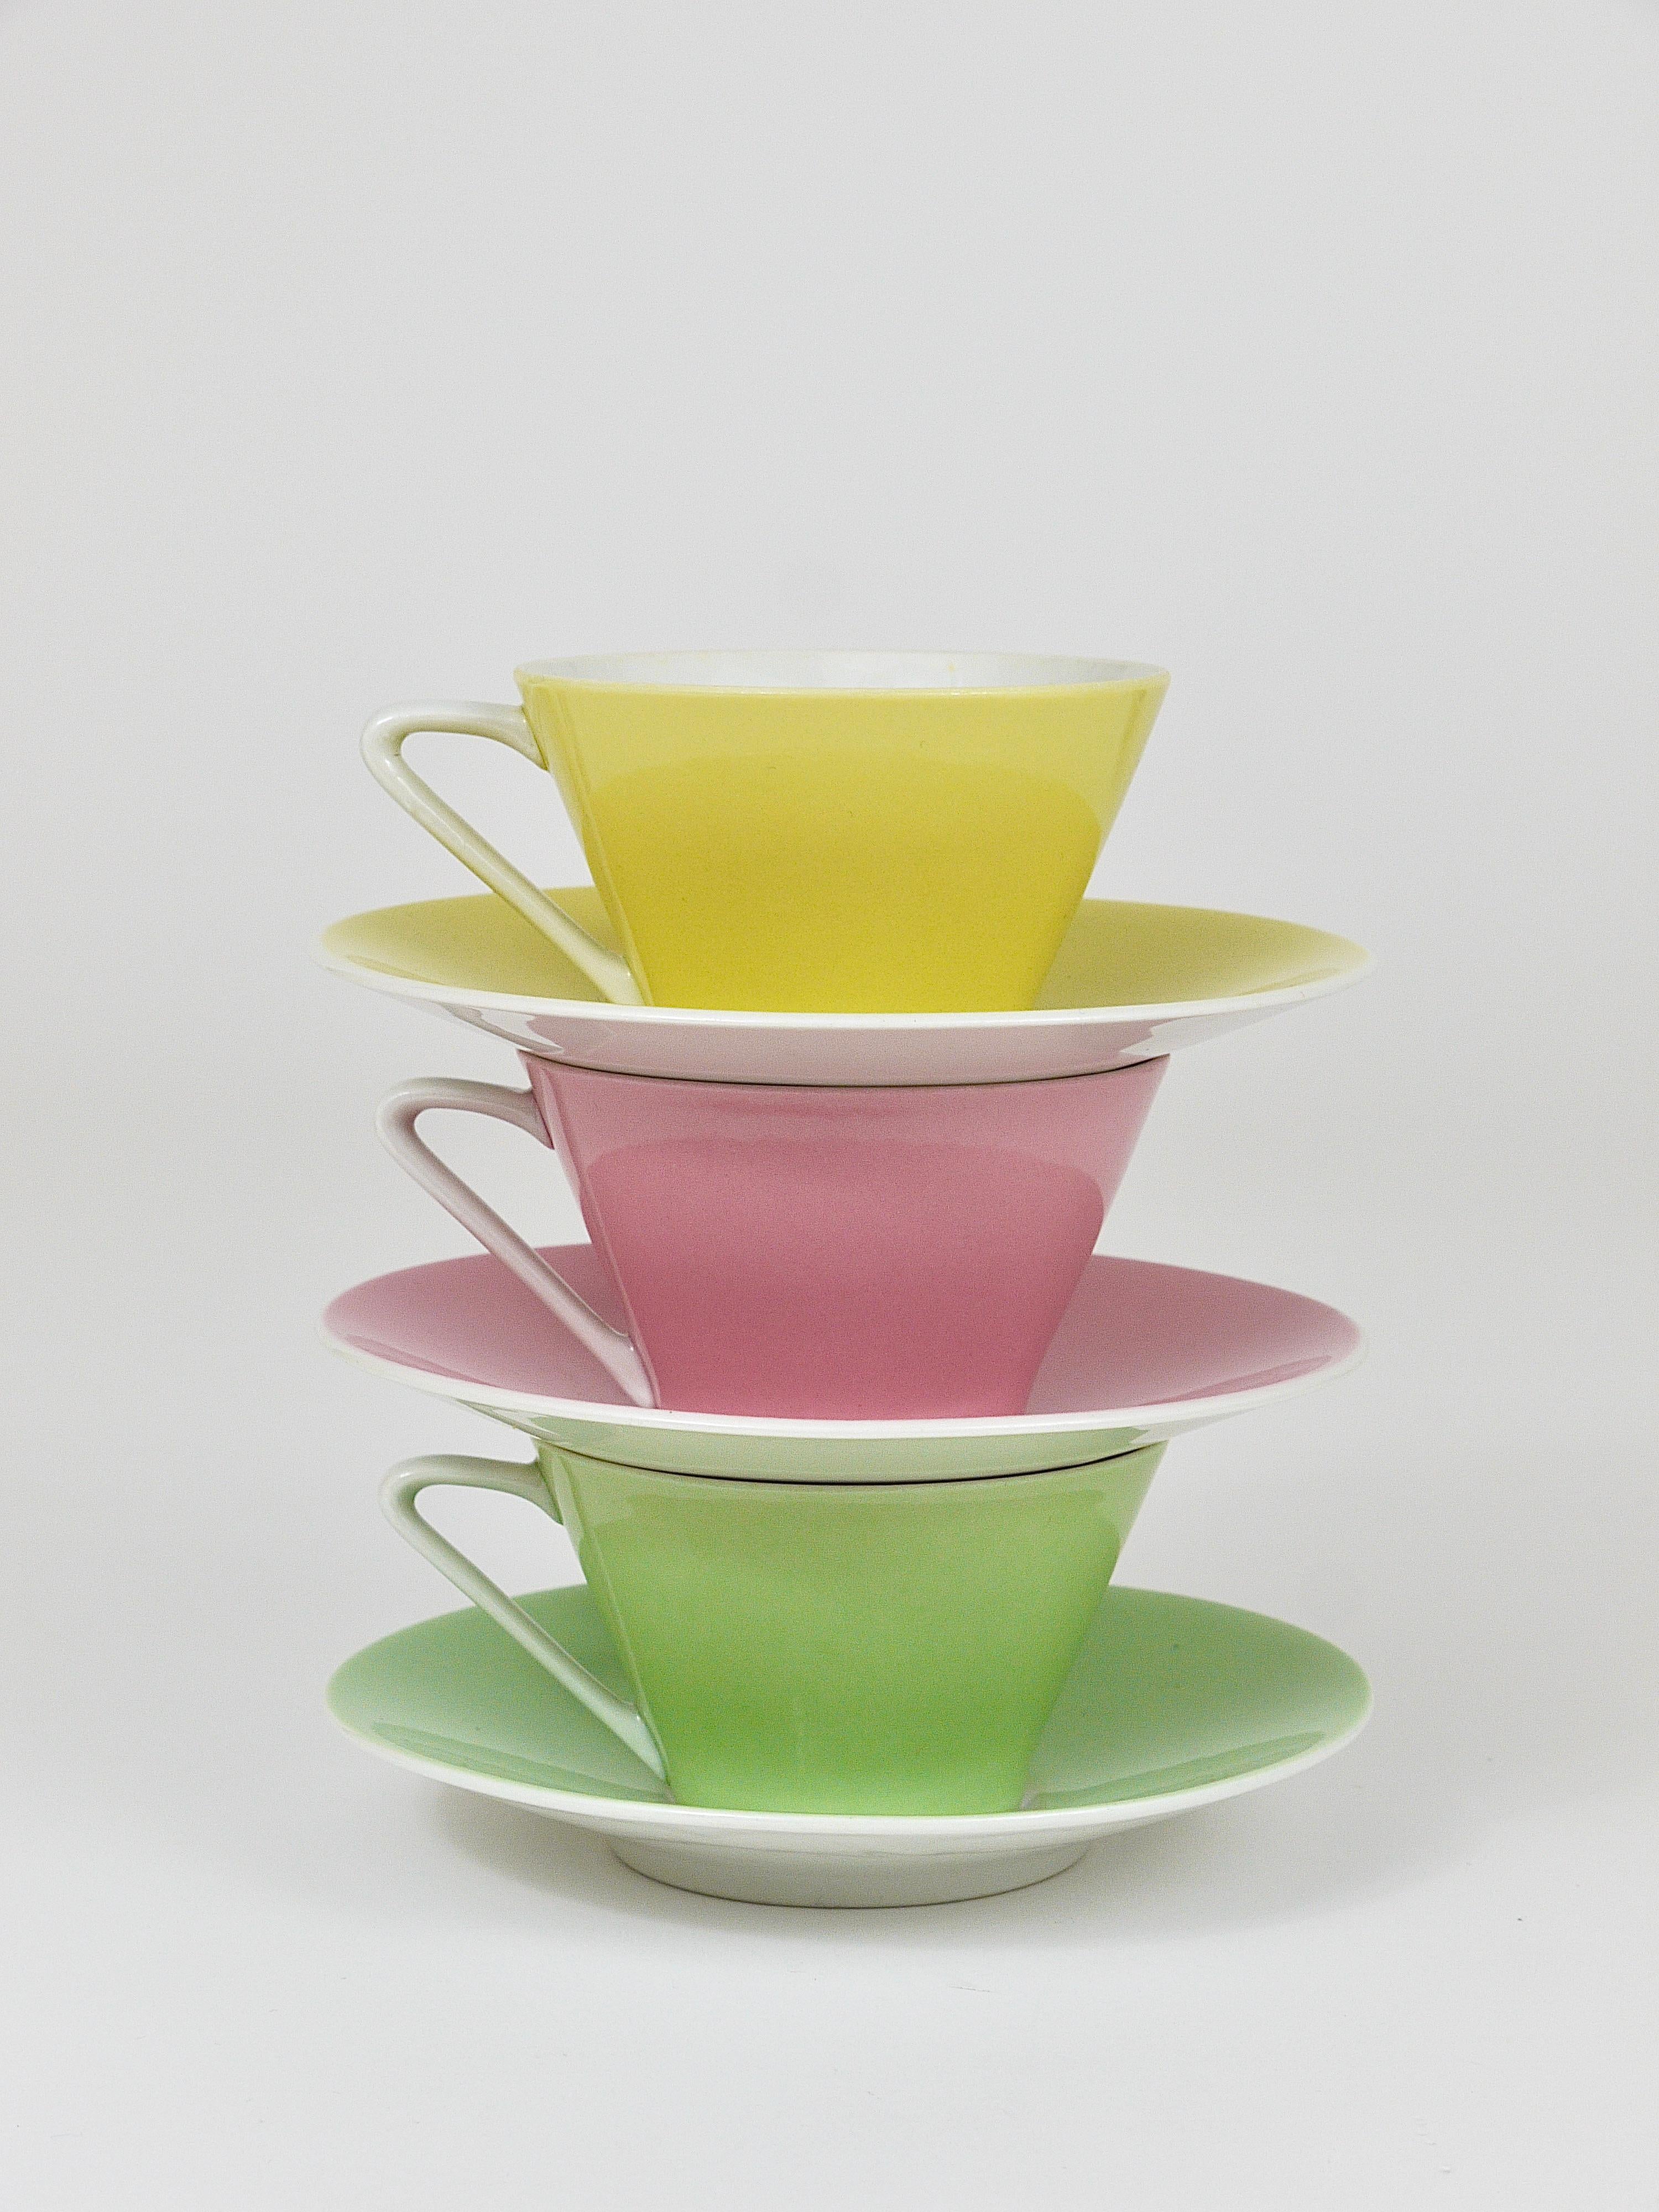 6 Midcentury Pastel Daisy Porcelain Coffee Cups, Lilien, Austria, 1950s For Sale 5